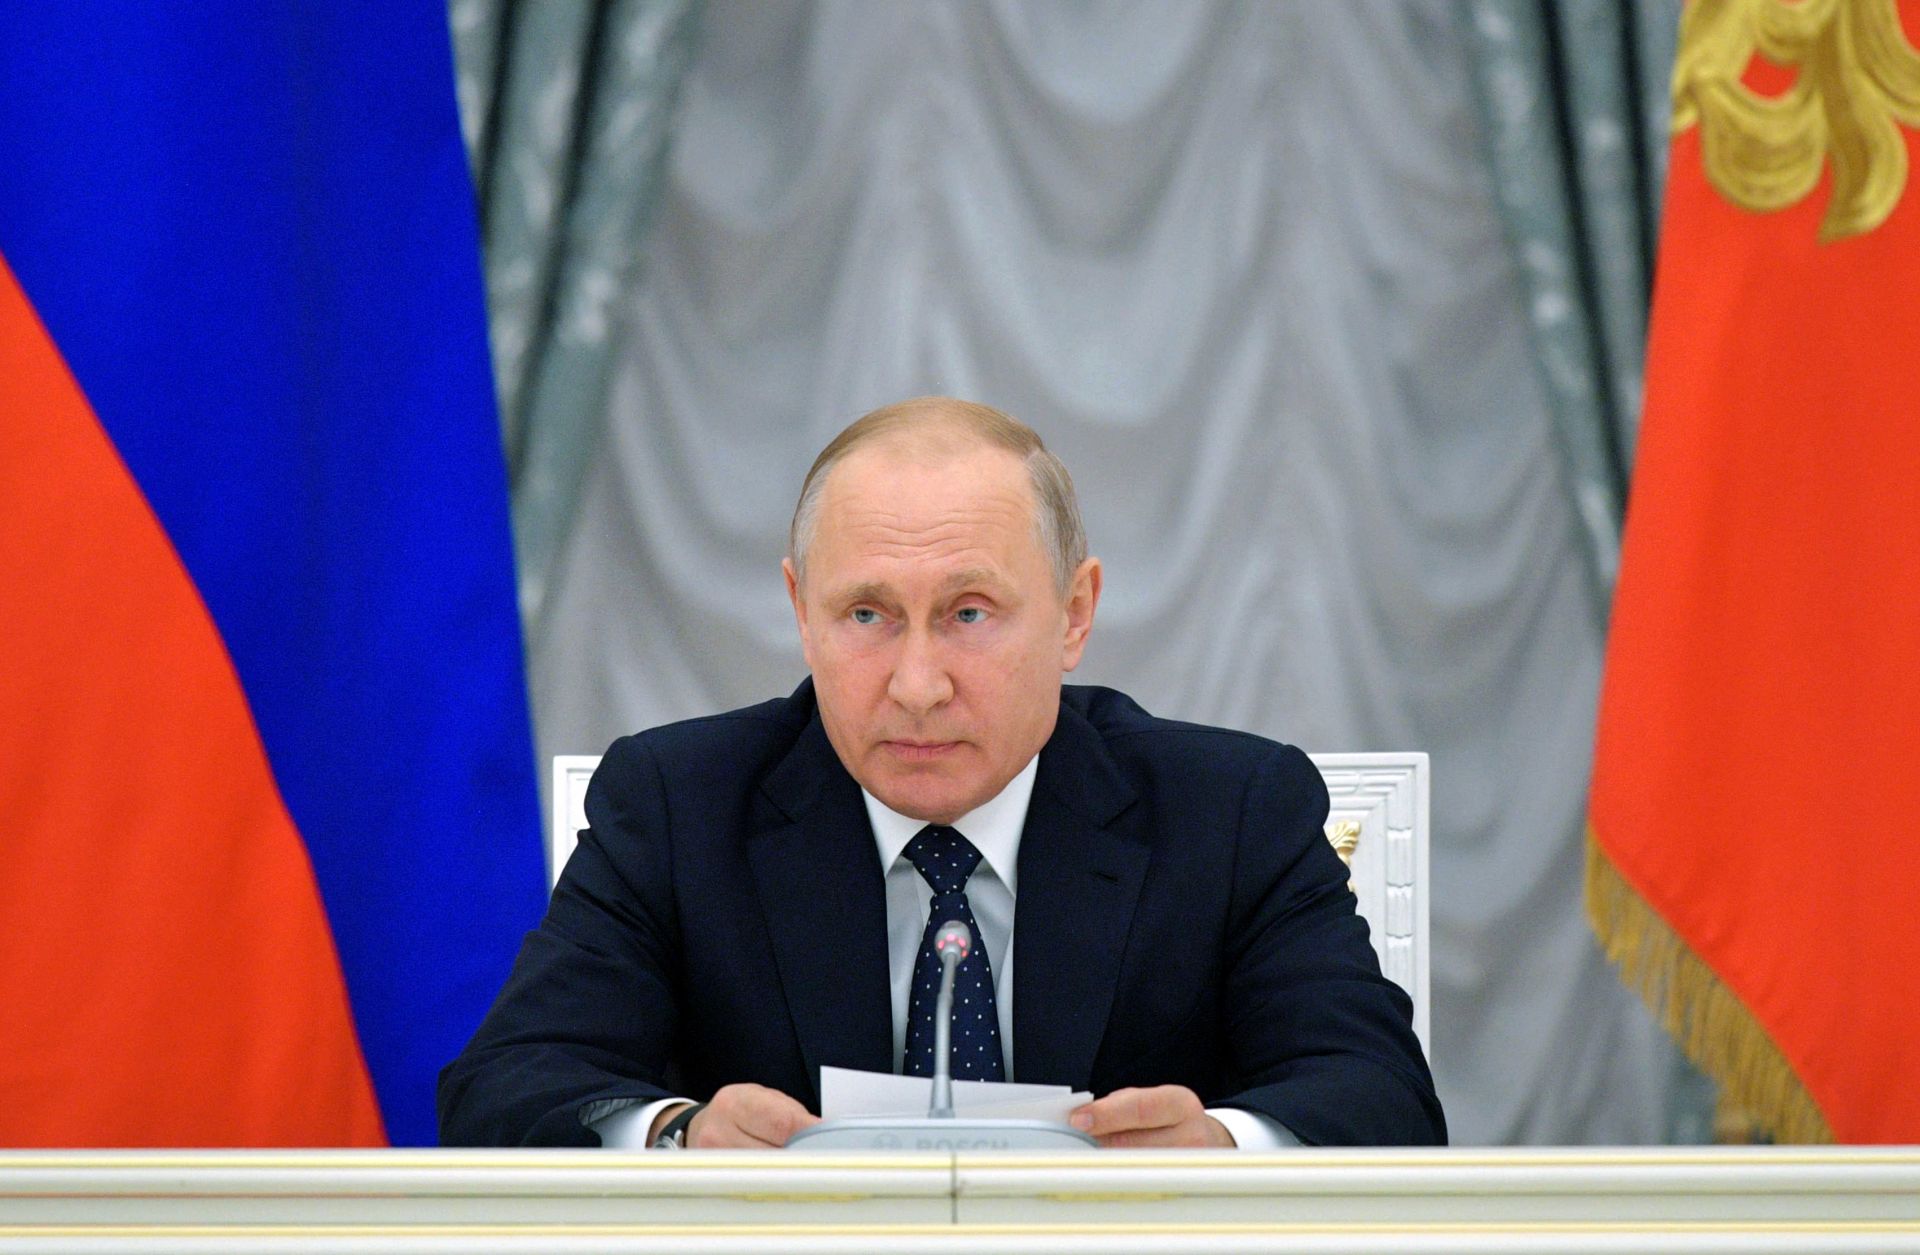 Трябва да поемате инициативи, да използвате нестандартни подходи, каза президентът Путин